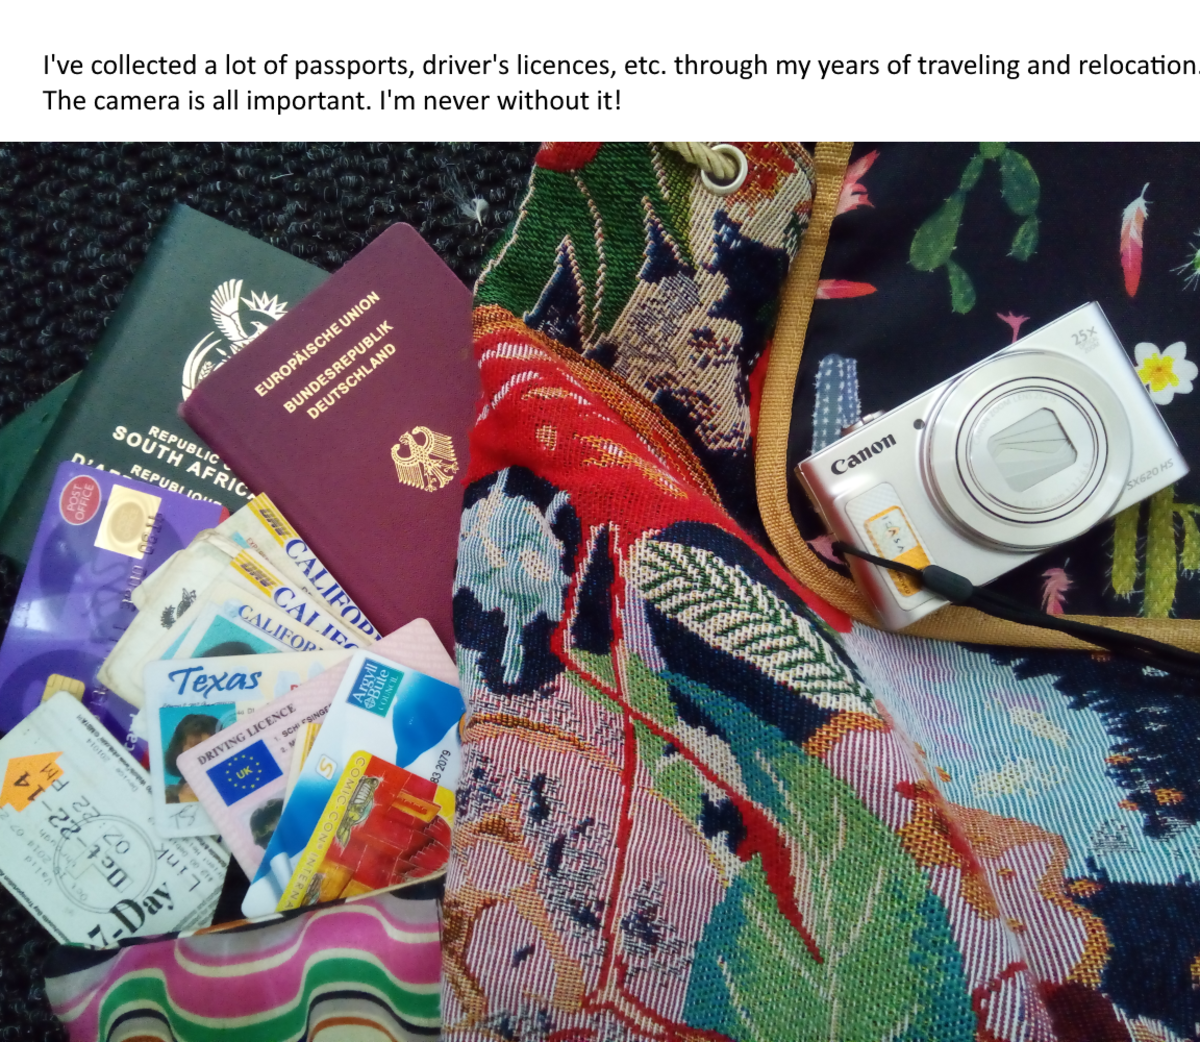 我把一个小袋,我所有的文档,护照,和卡片。一个解锁手机,相机,和一个小笔记本,便于携带是重要的对我来说。